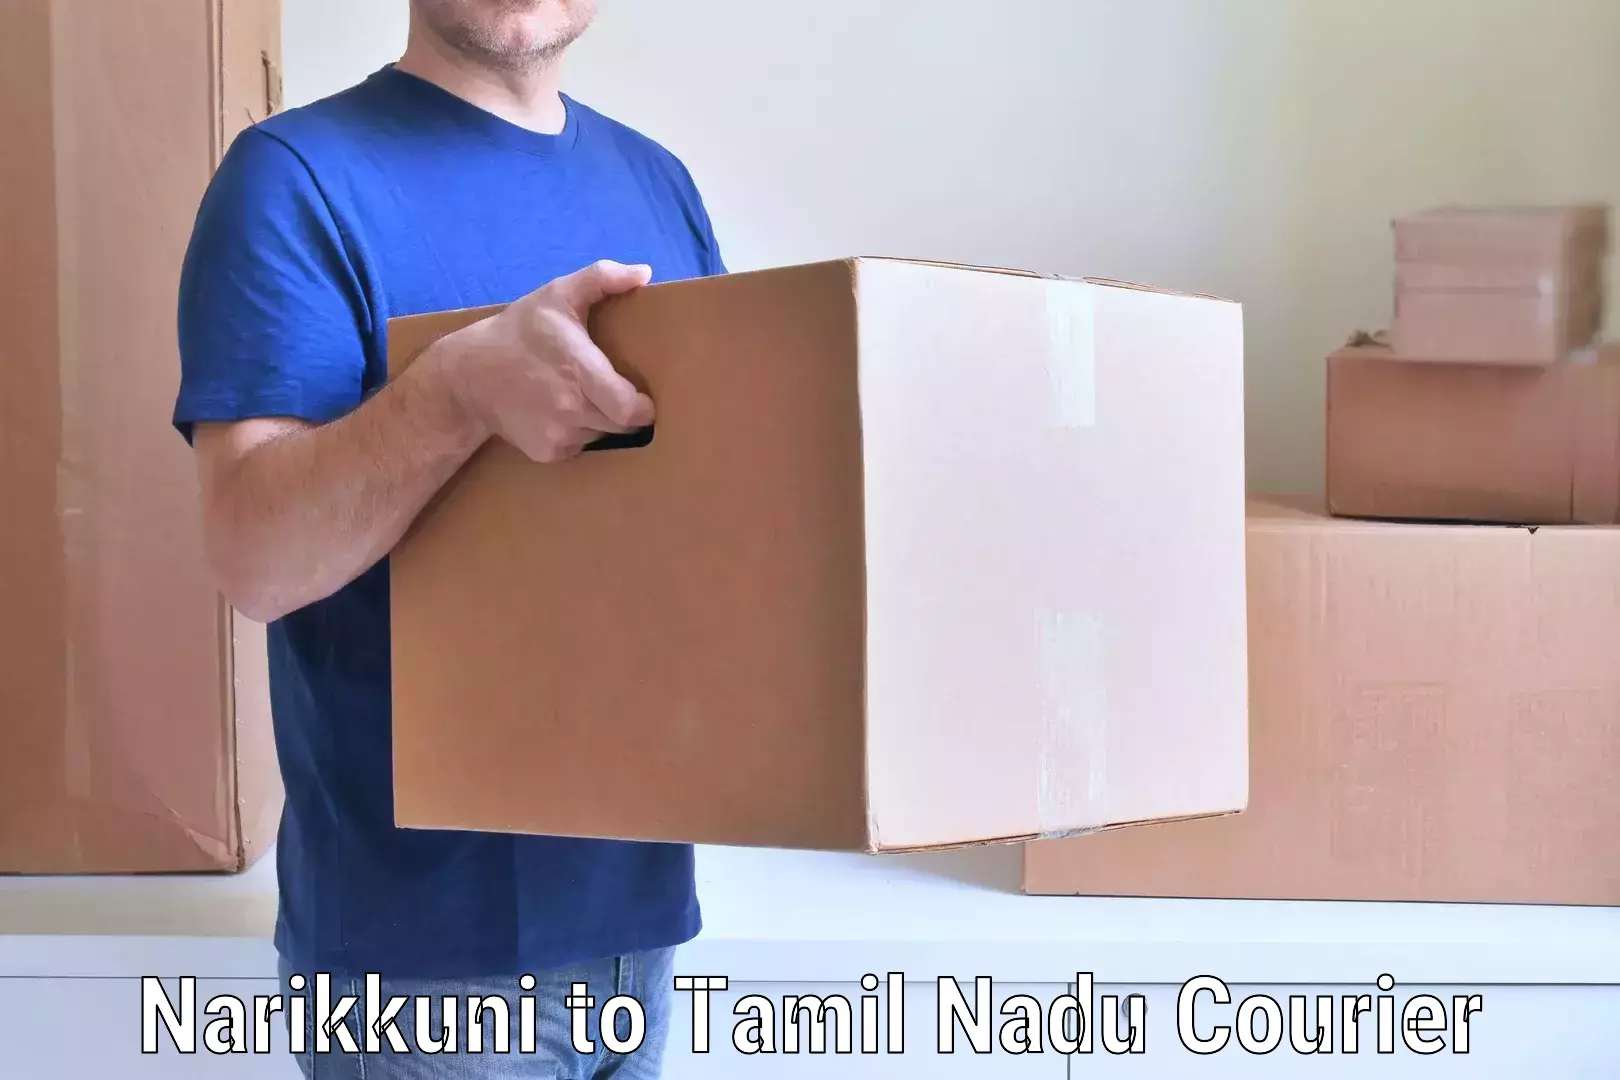 Trusted moving company Narikkuni to Kodaikanal